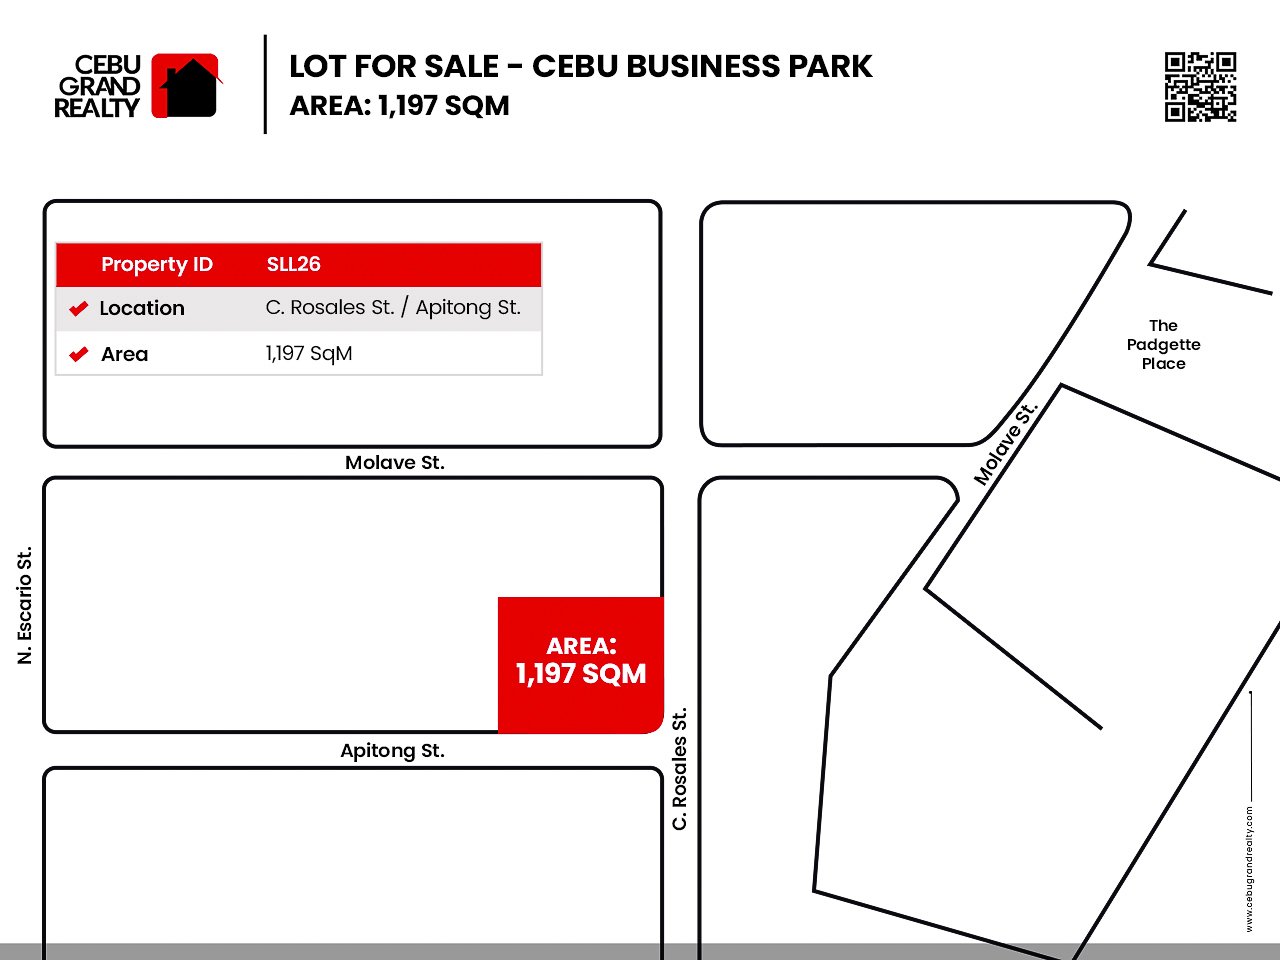 SLL26 - 1197 SqM Lot for Sale near Cebu Business Park - Cebu Grand Realty (2)